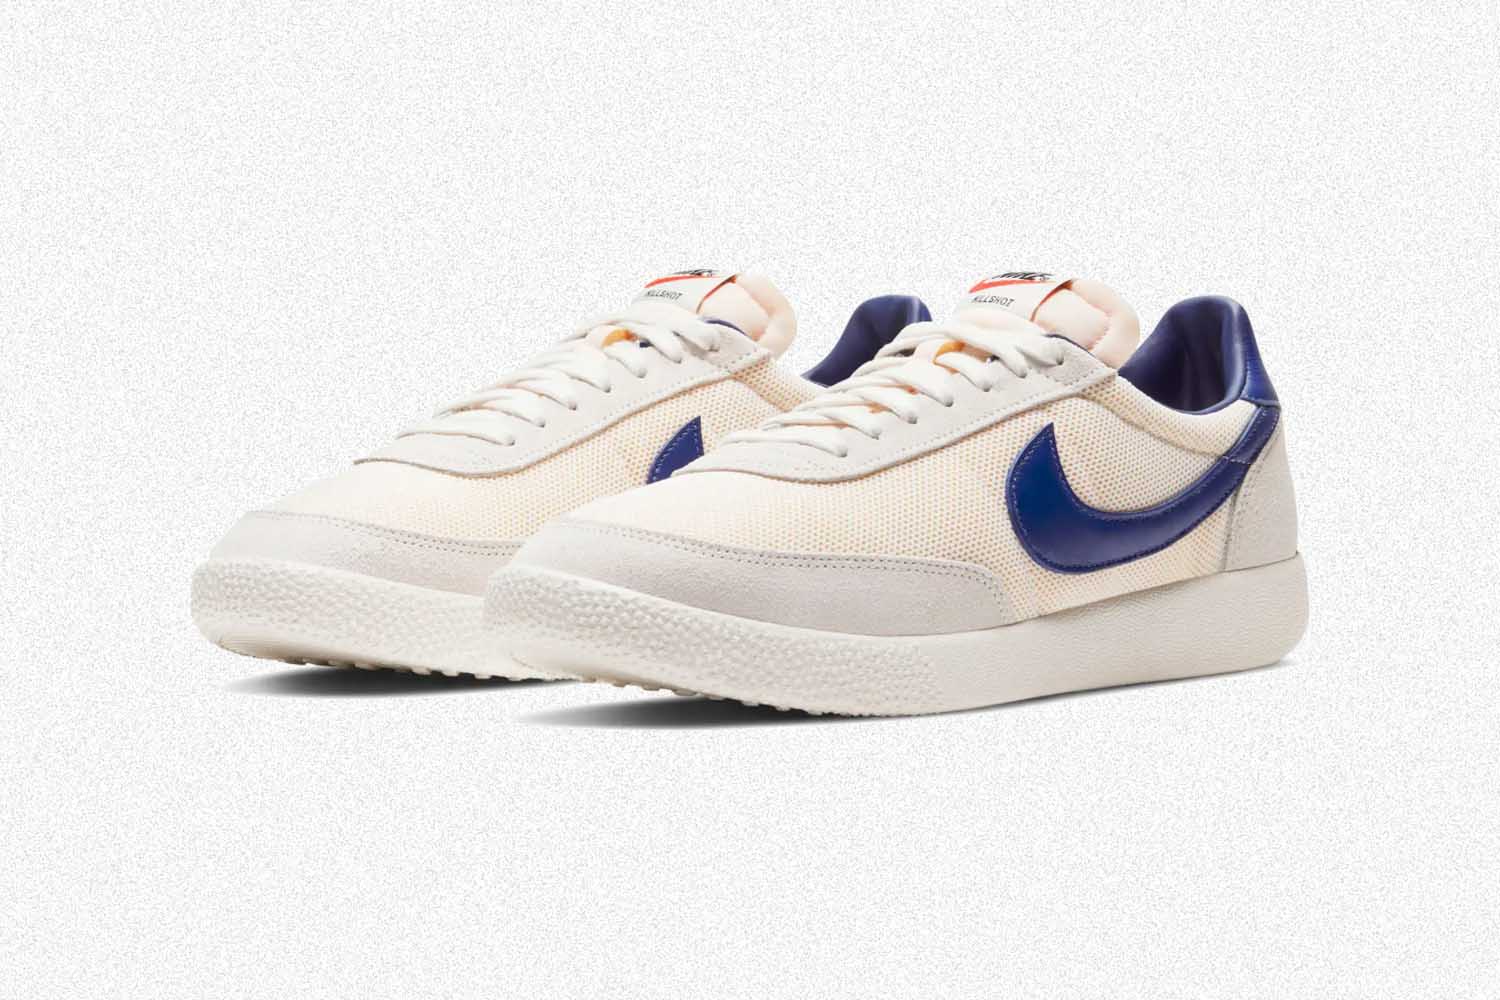 A pair of men's Nike Killshot OG Sneakers in white and blue